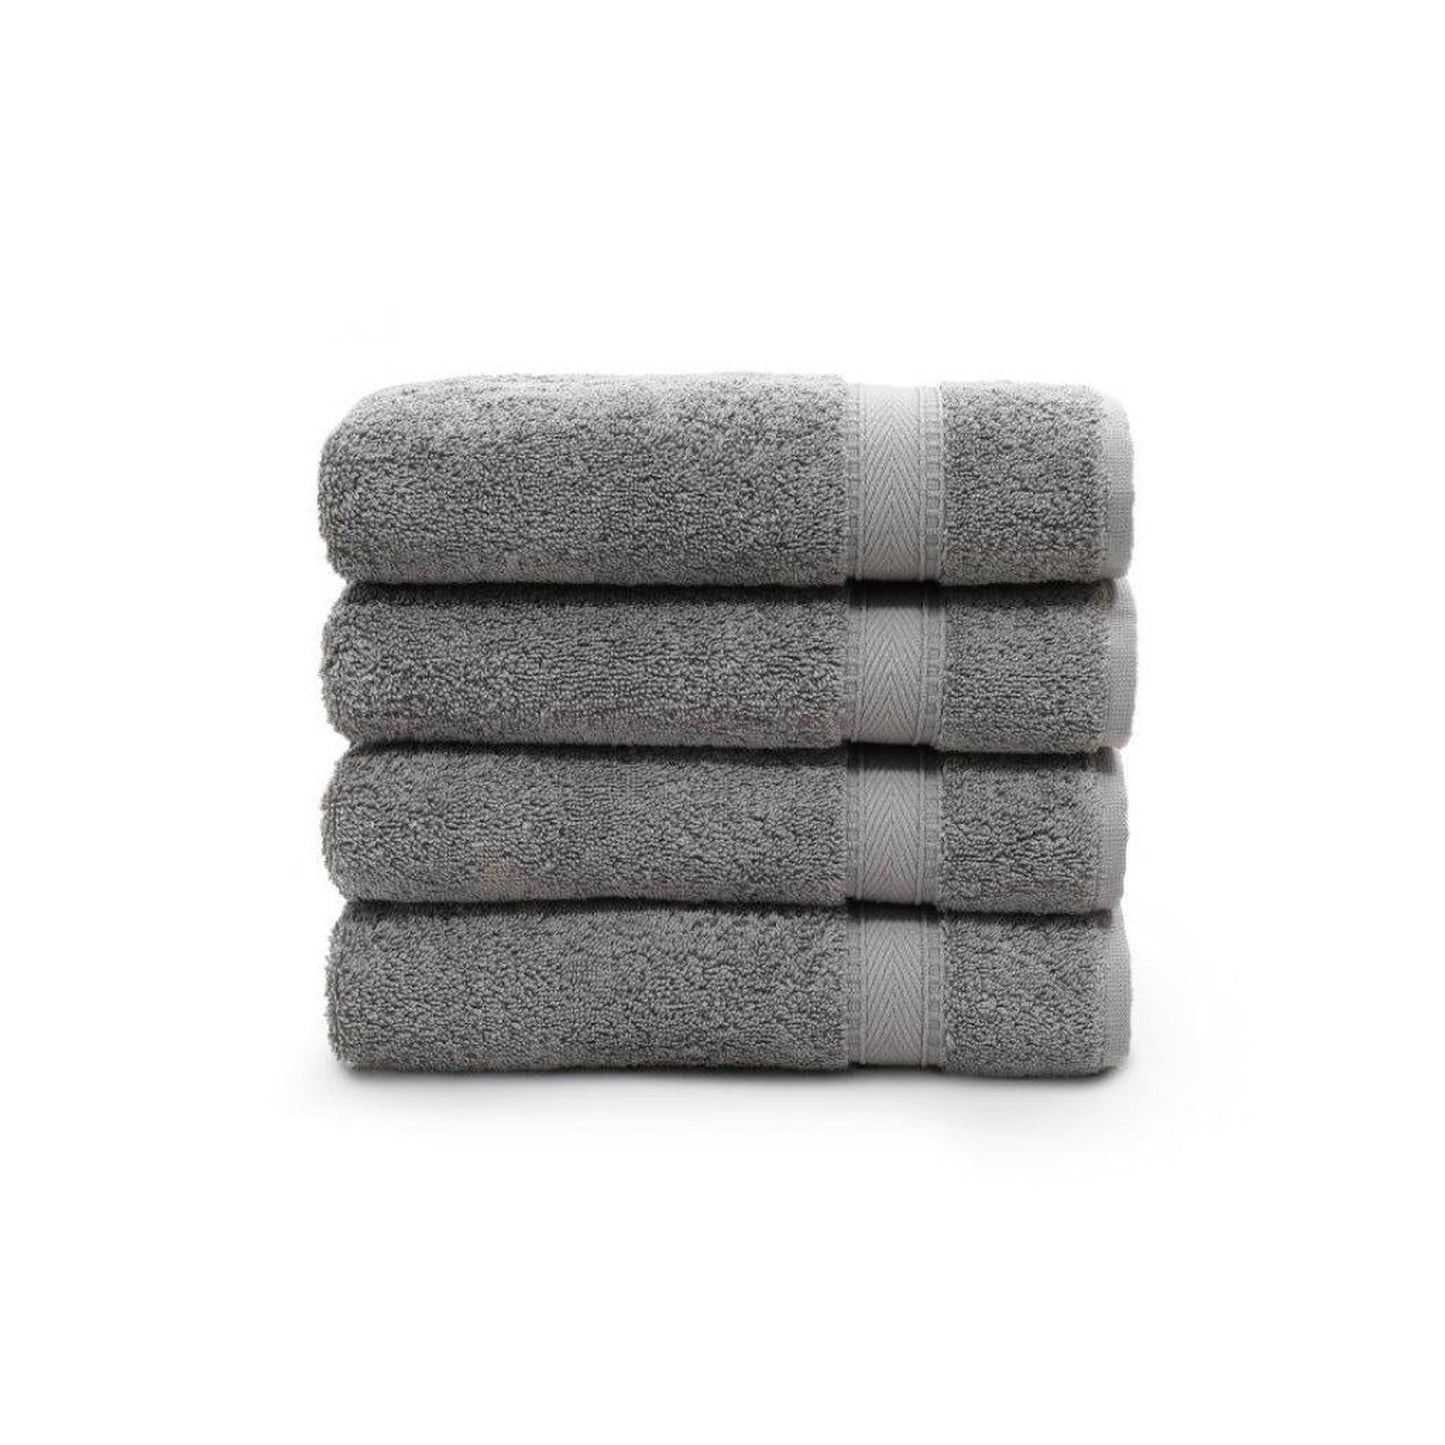 Linum Sinemis Turkish Cotton Dark Grey Hand Towel